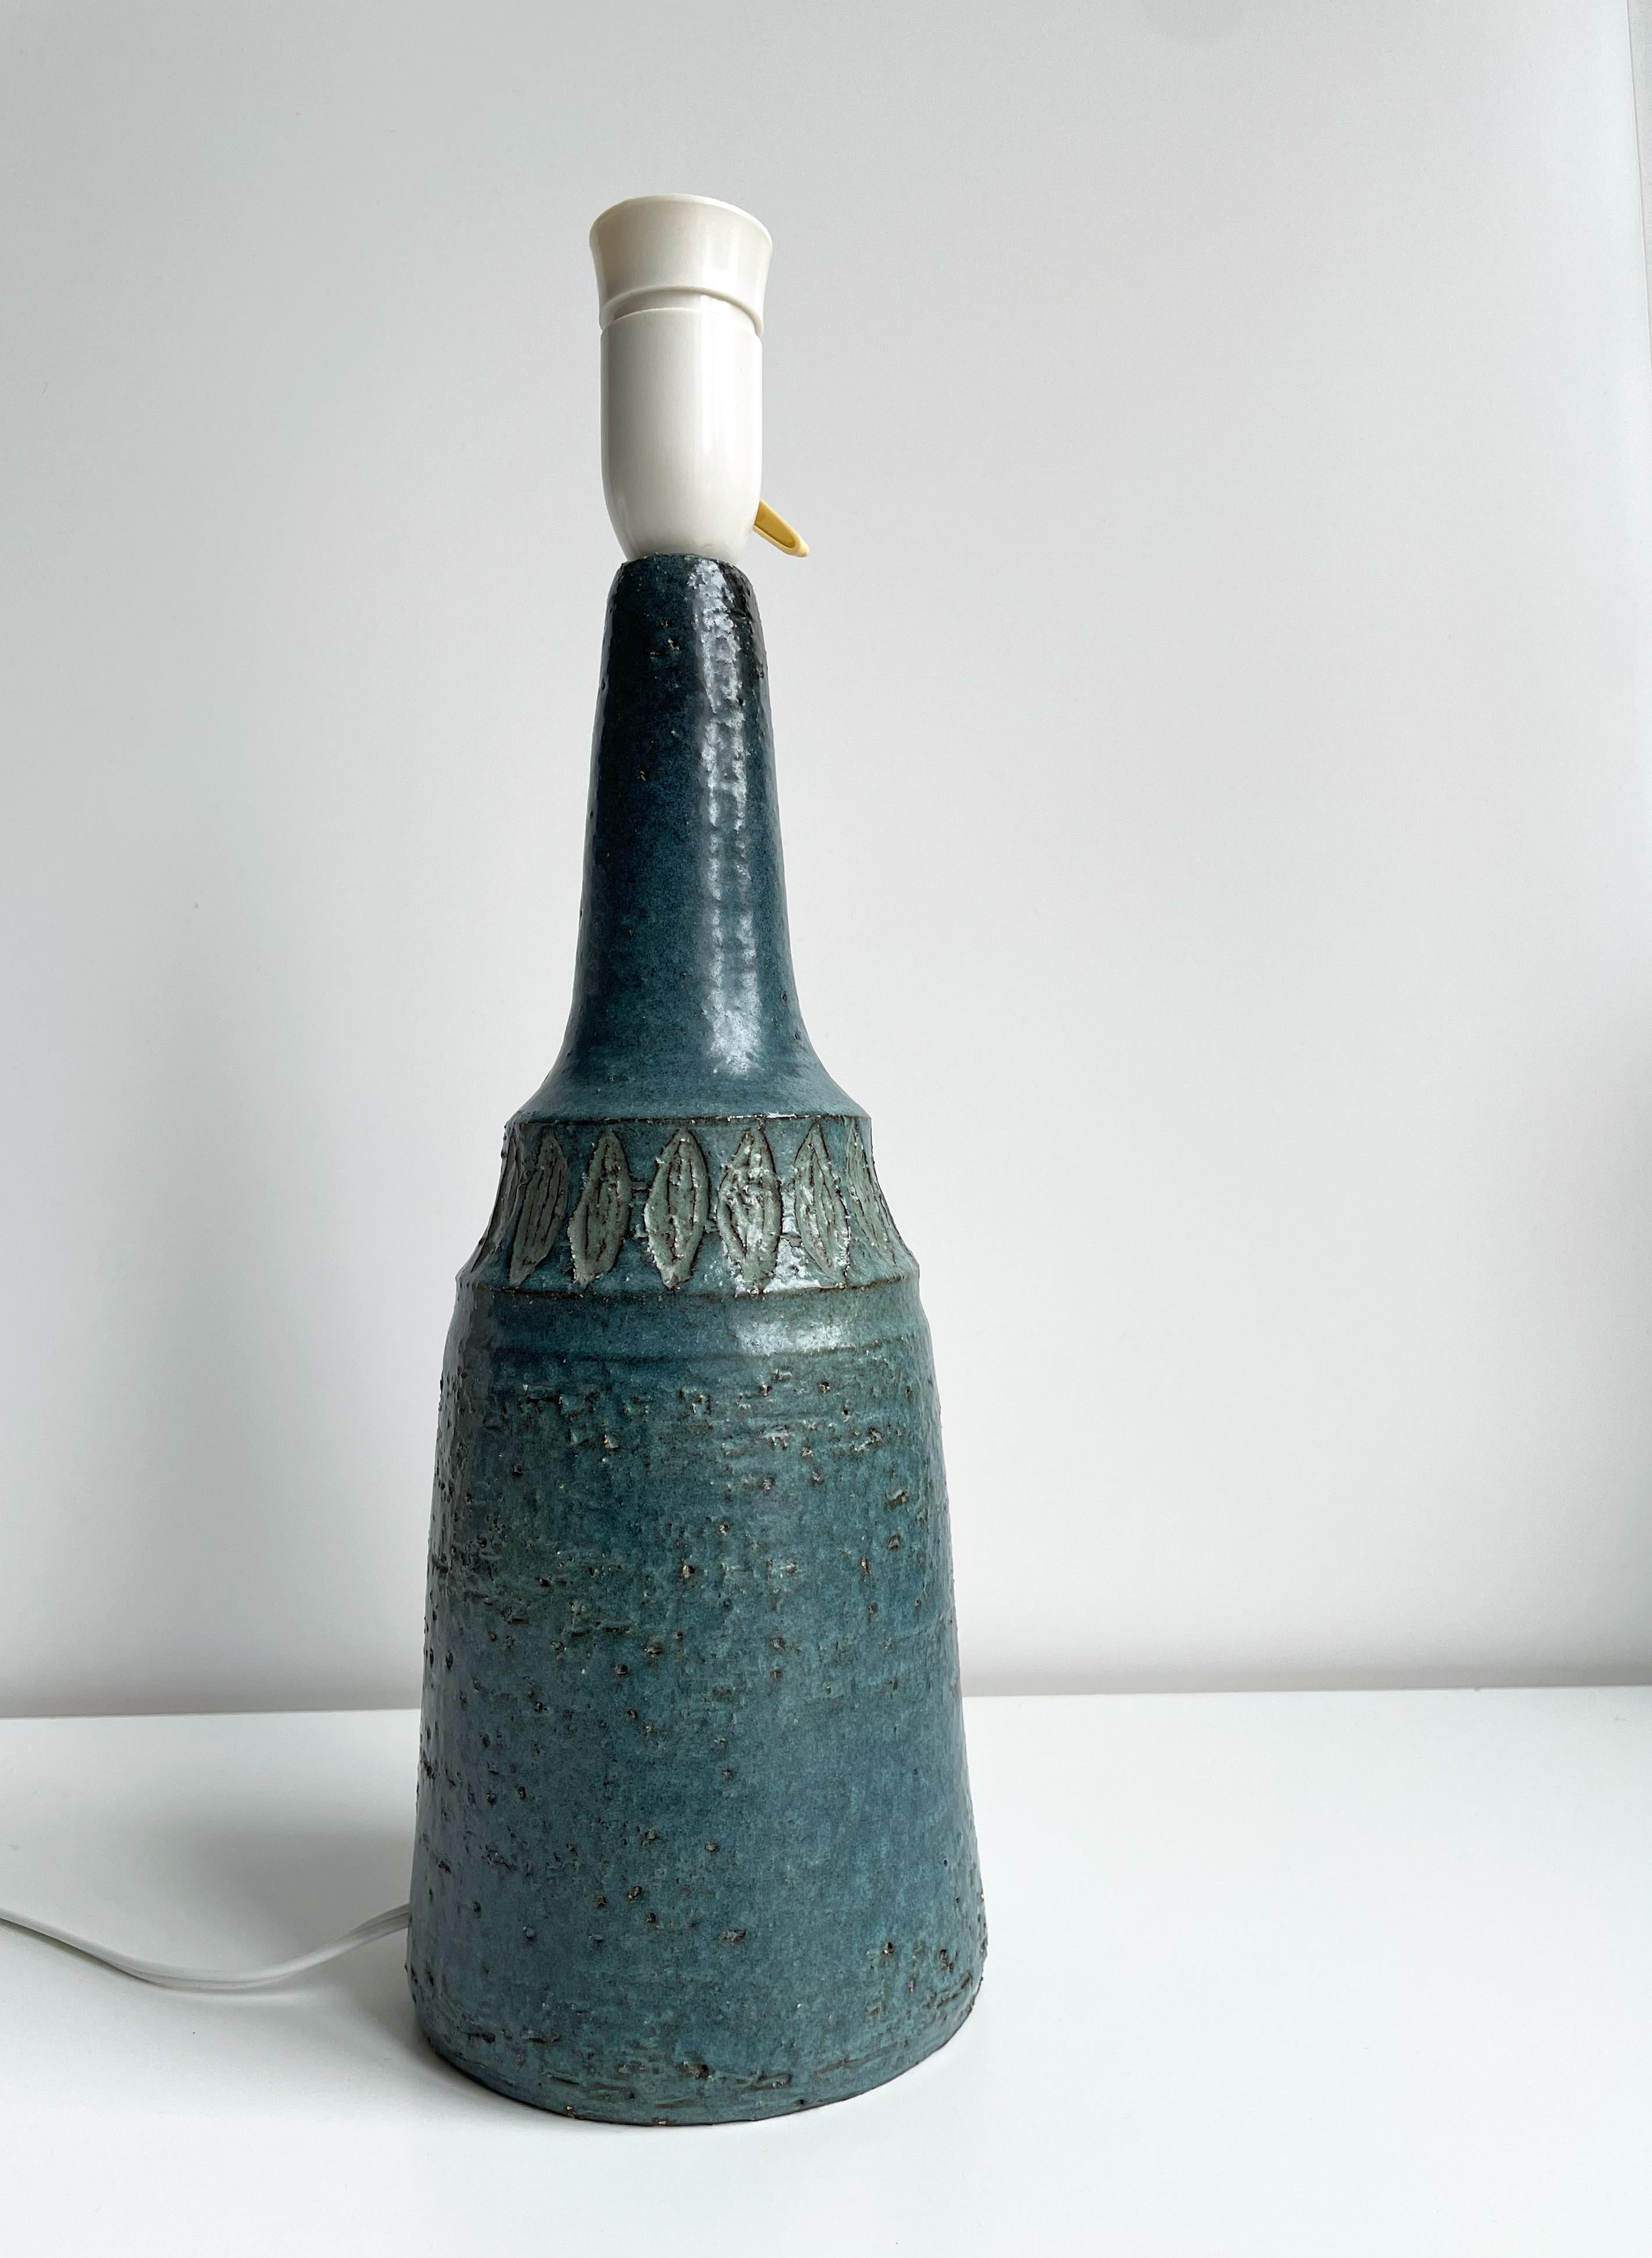 Dänische Mid-Century Modern handgefertigte Keramik Tischlampe von Sejer Keramikfabrik. Hergestellt auf der dänischen Insel Fünen in den 1960er Jahren als Teil einer limitierten Produktion. Handgefertigt und von Hand verziert mit einem hellgrünen